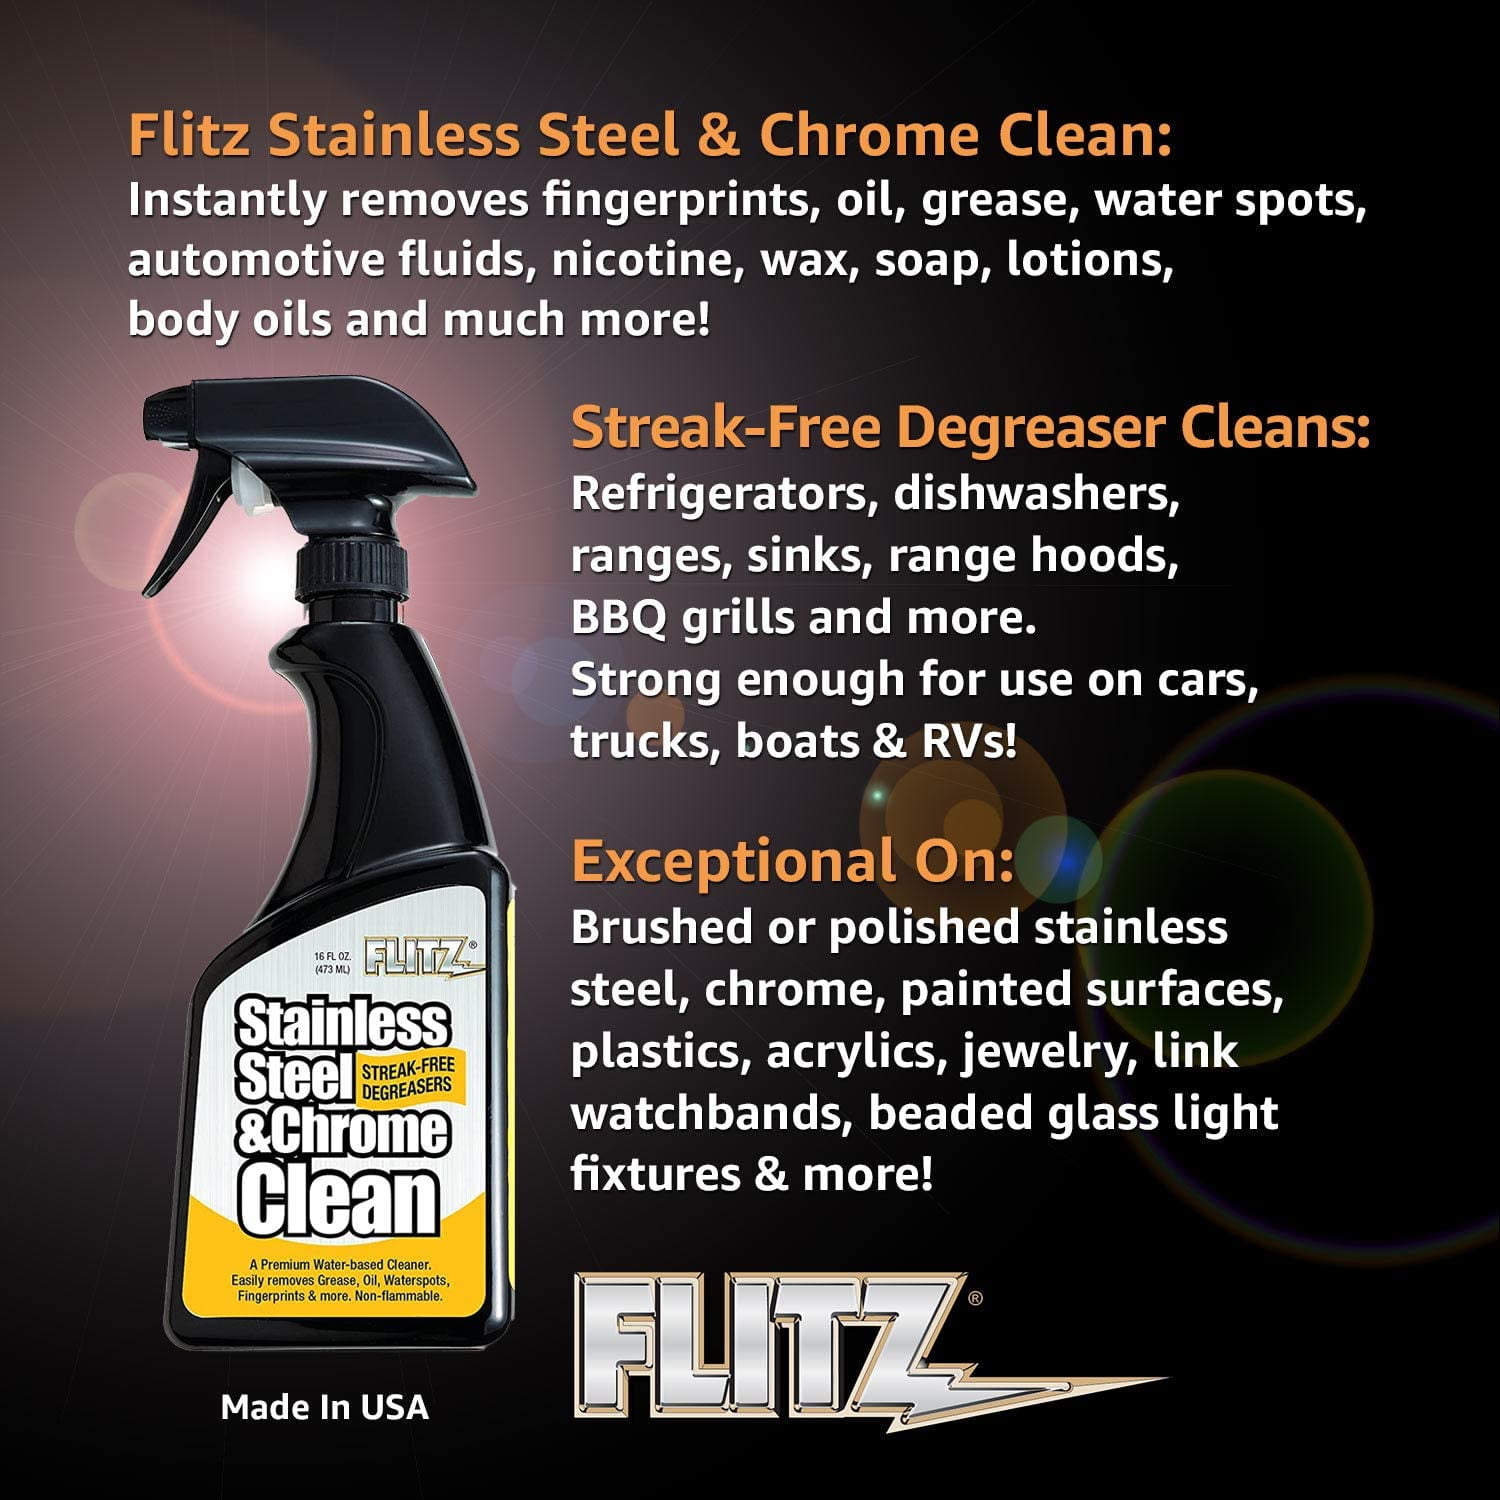 Flitz Stainless Steel & Chrome Cleaner